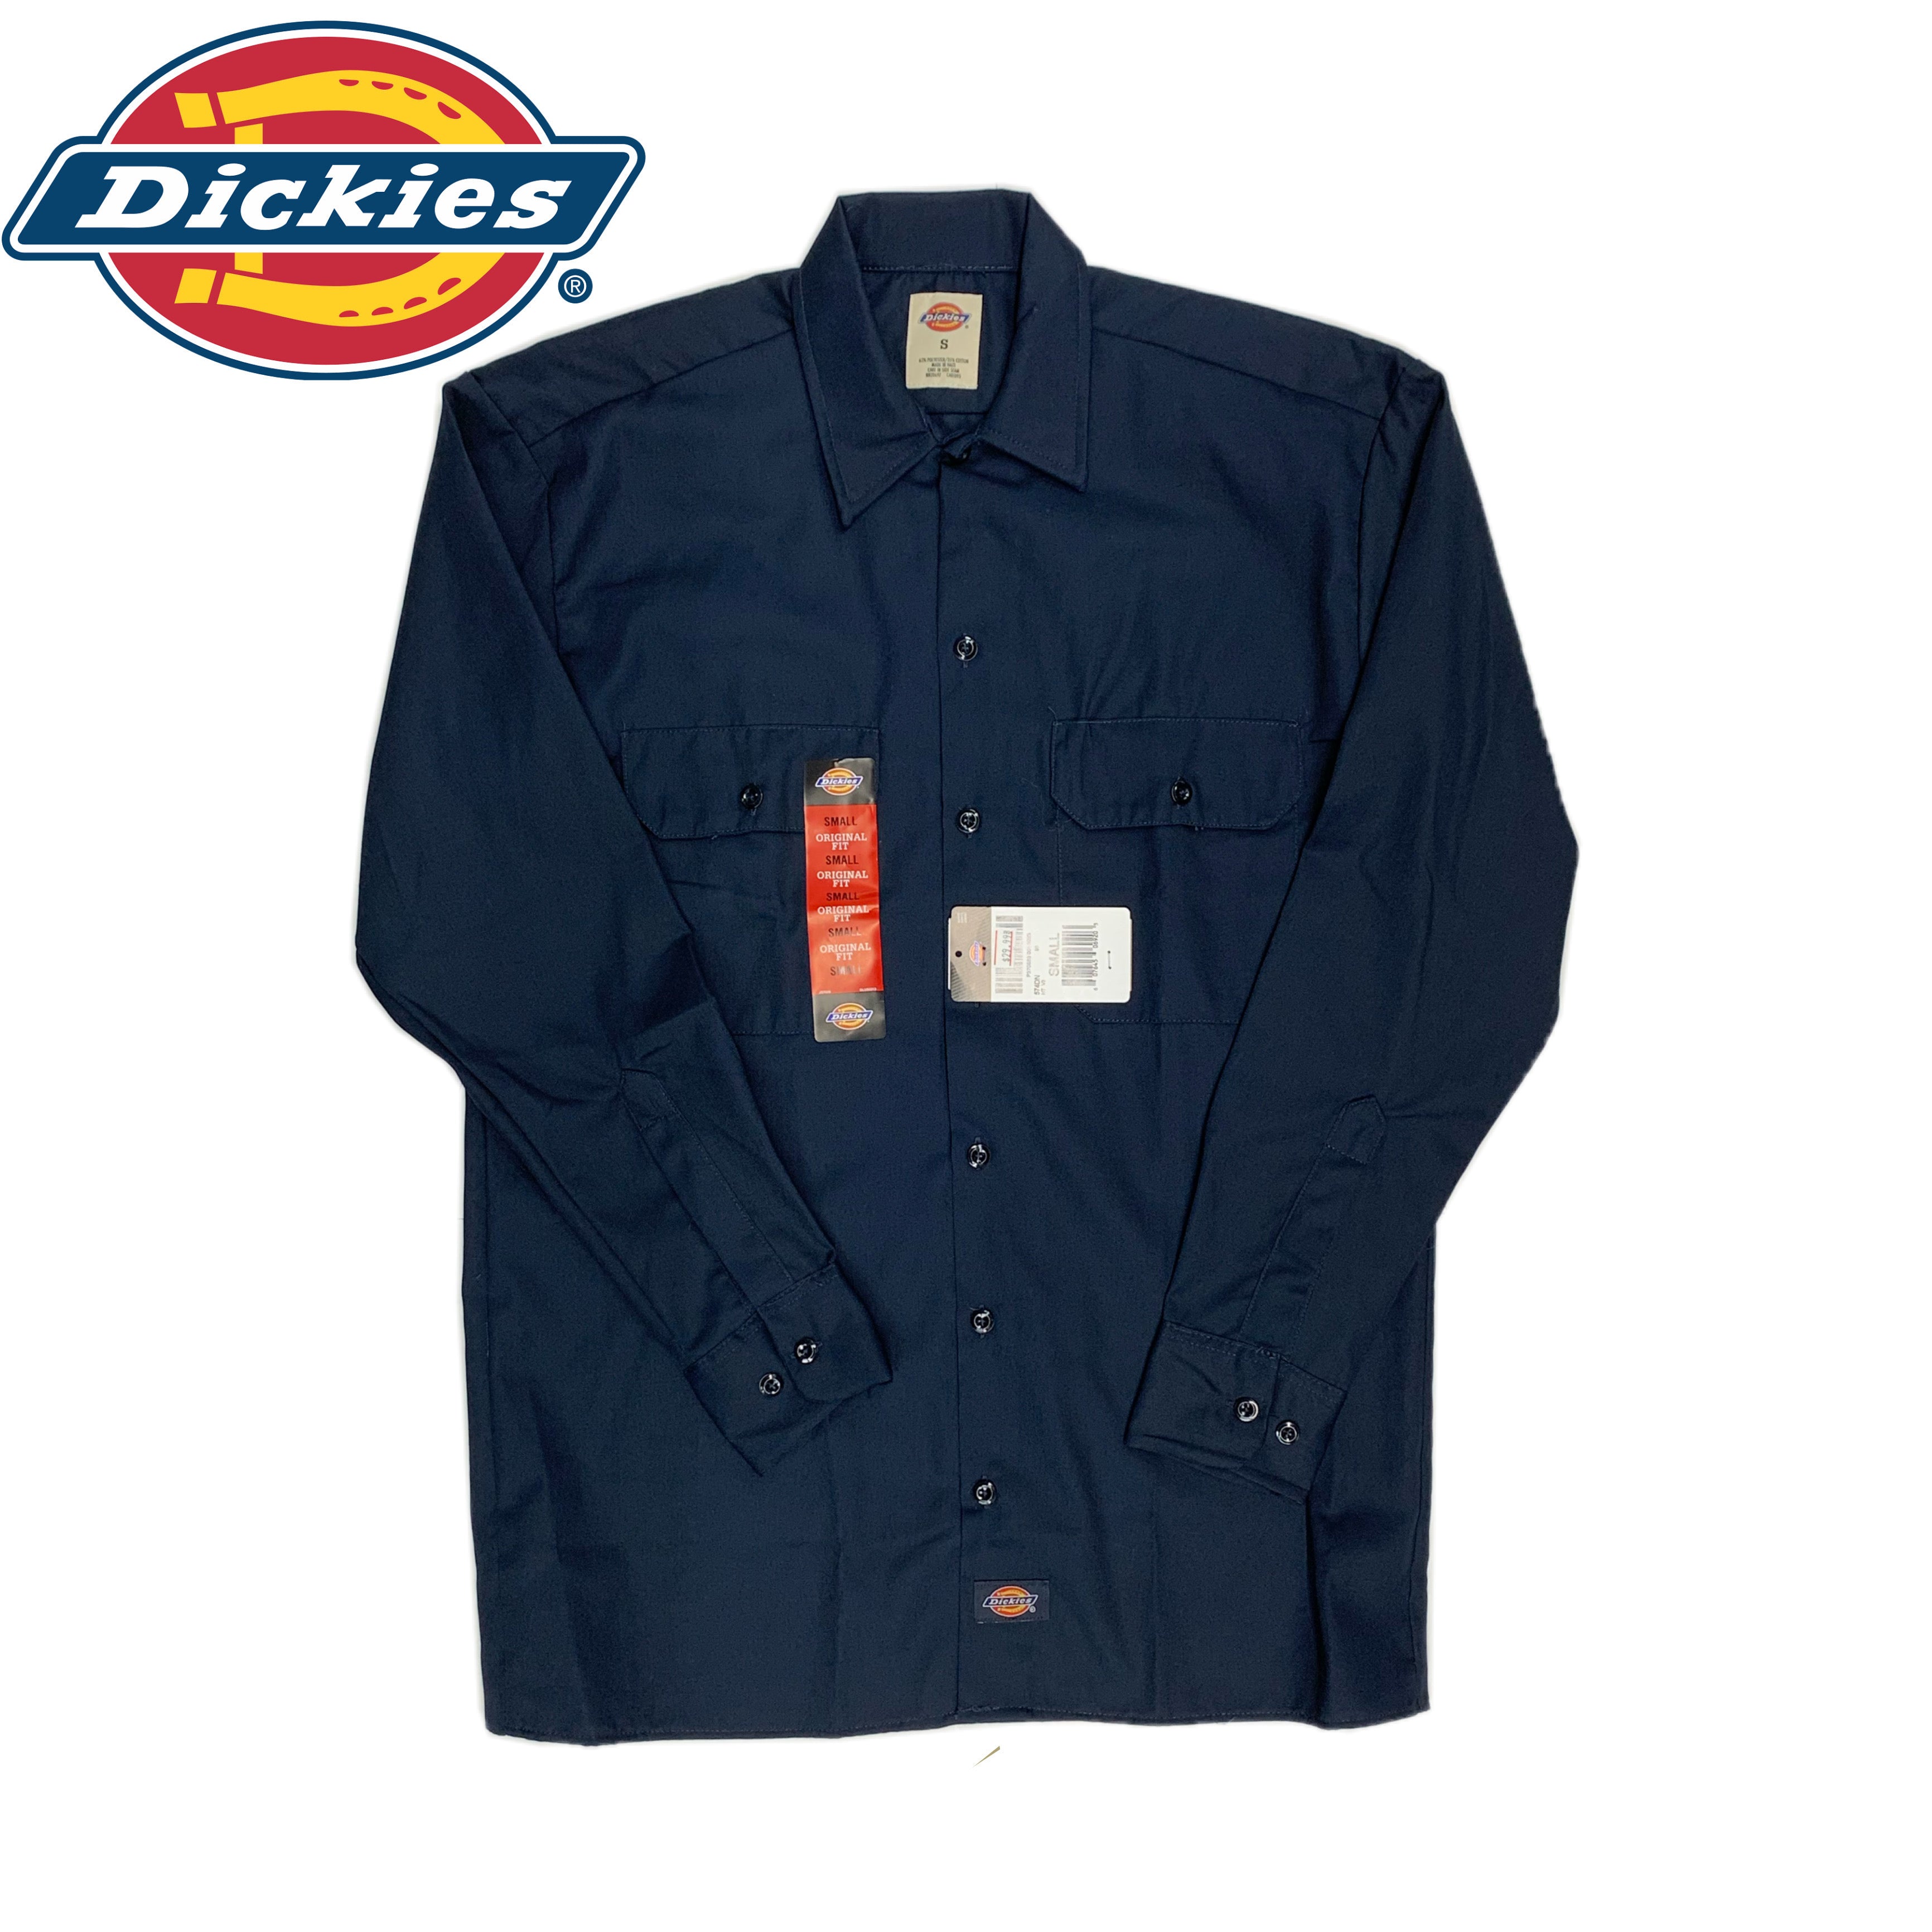 Dickies Long Sleeve Work Shirt